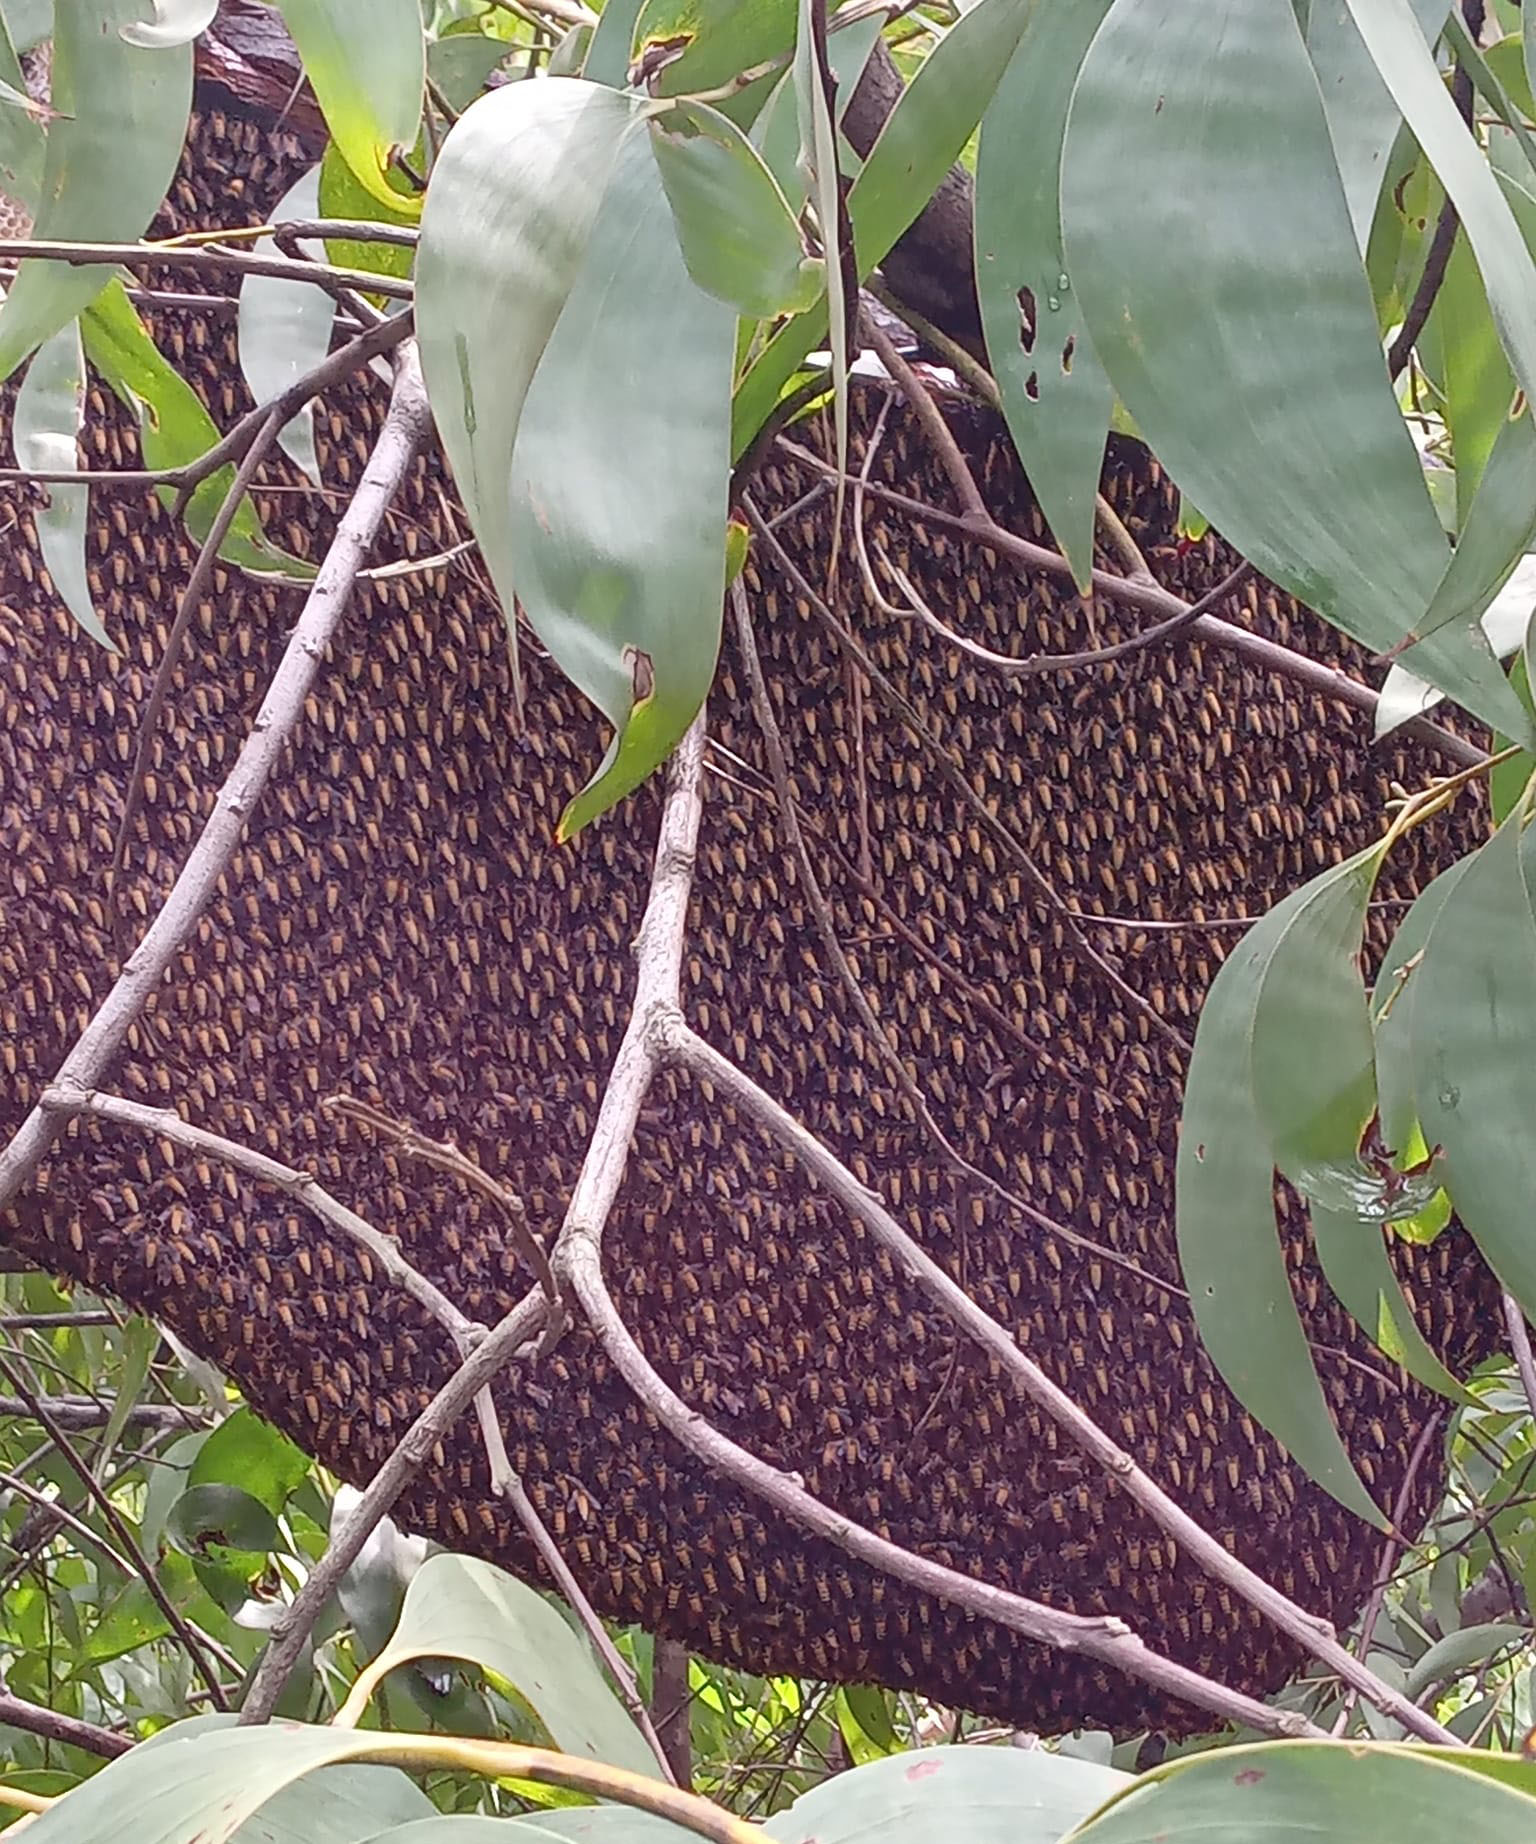 Mật ong rừng được lấy từ những tổ ong tự nhiên, không có sự chăm sóc của con người